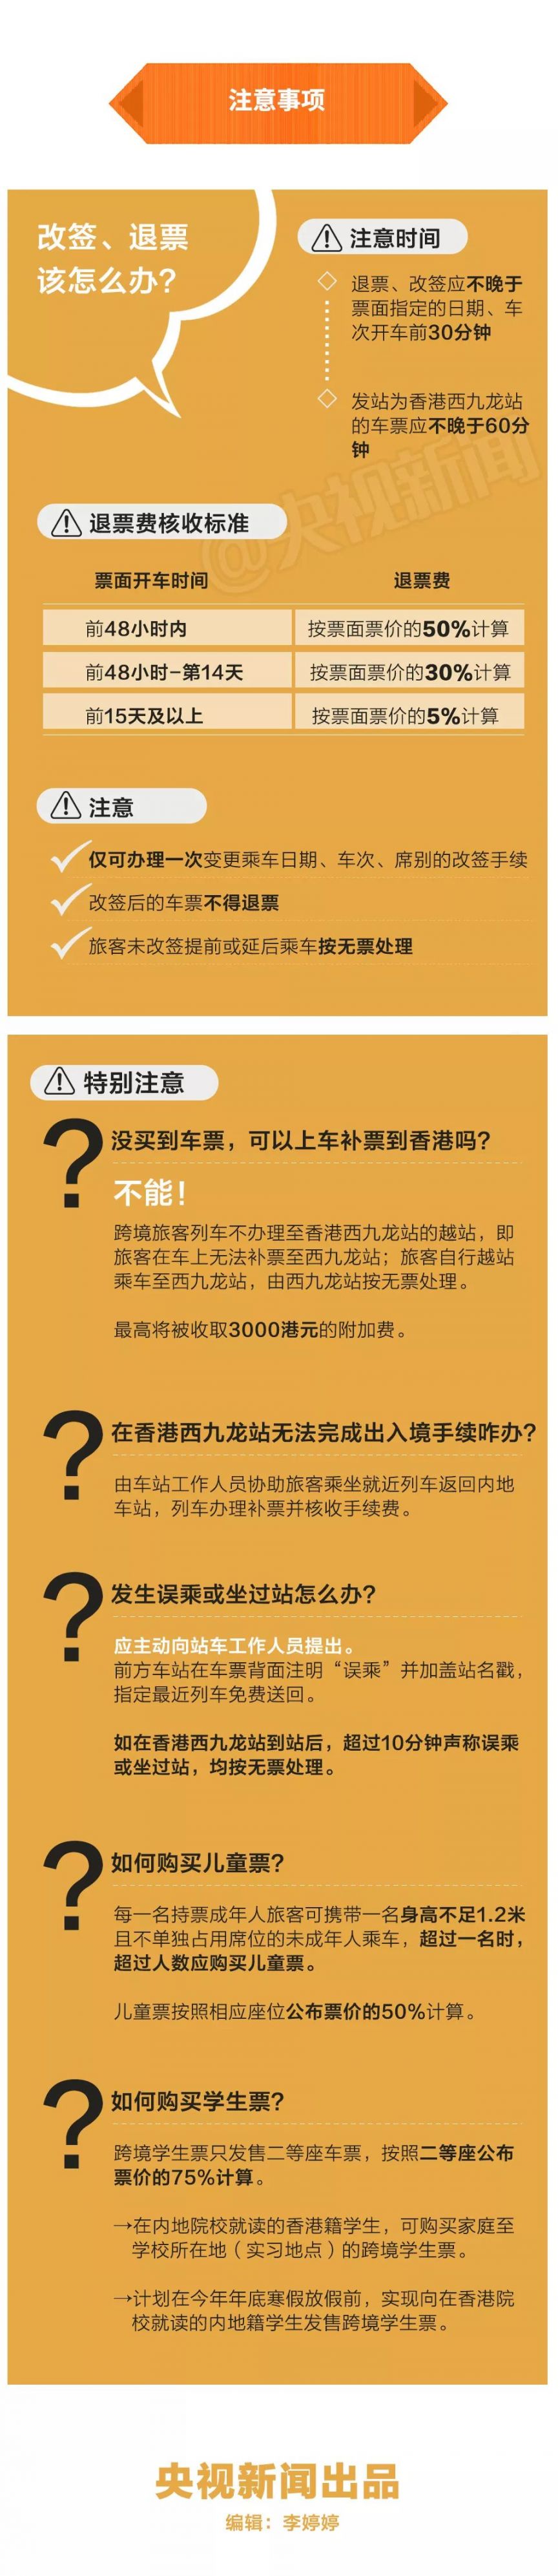 北京如何乘坐高铁去香港(证件 买票方式 乘车规定 过关安检流程 离港及注意事项)